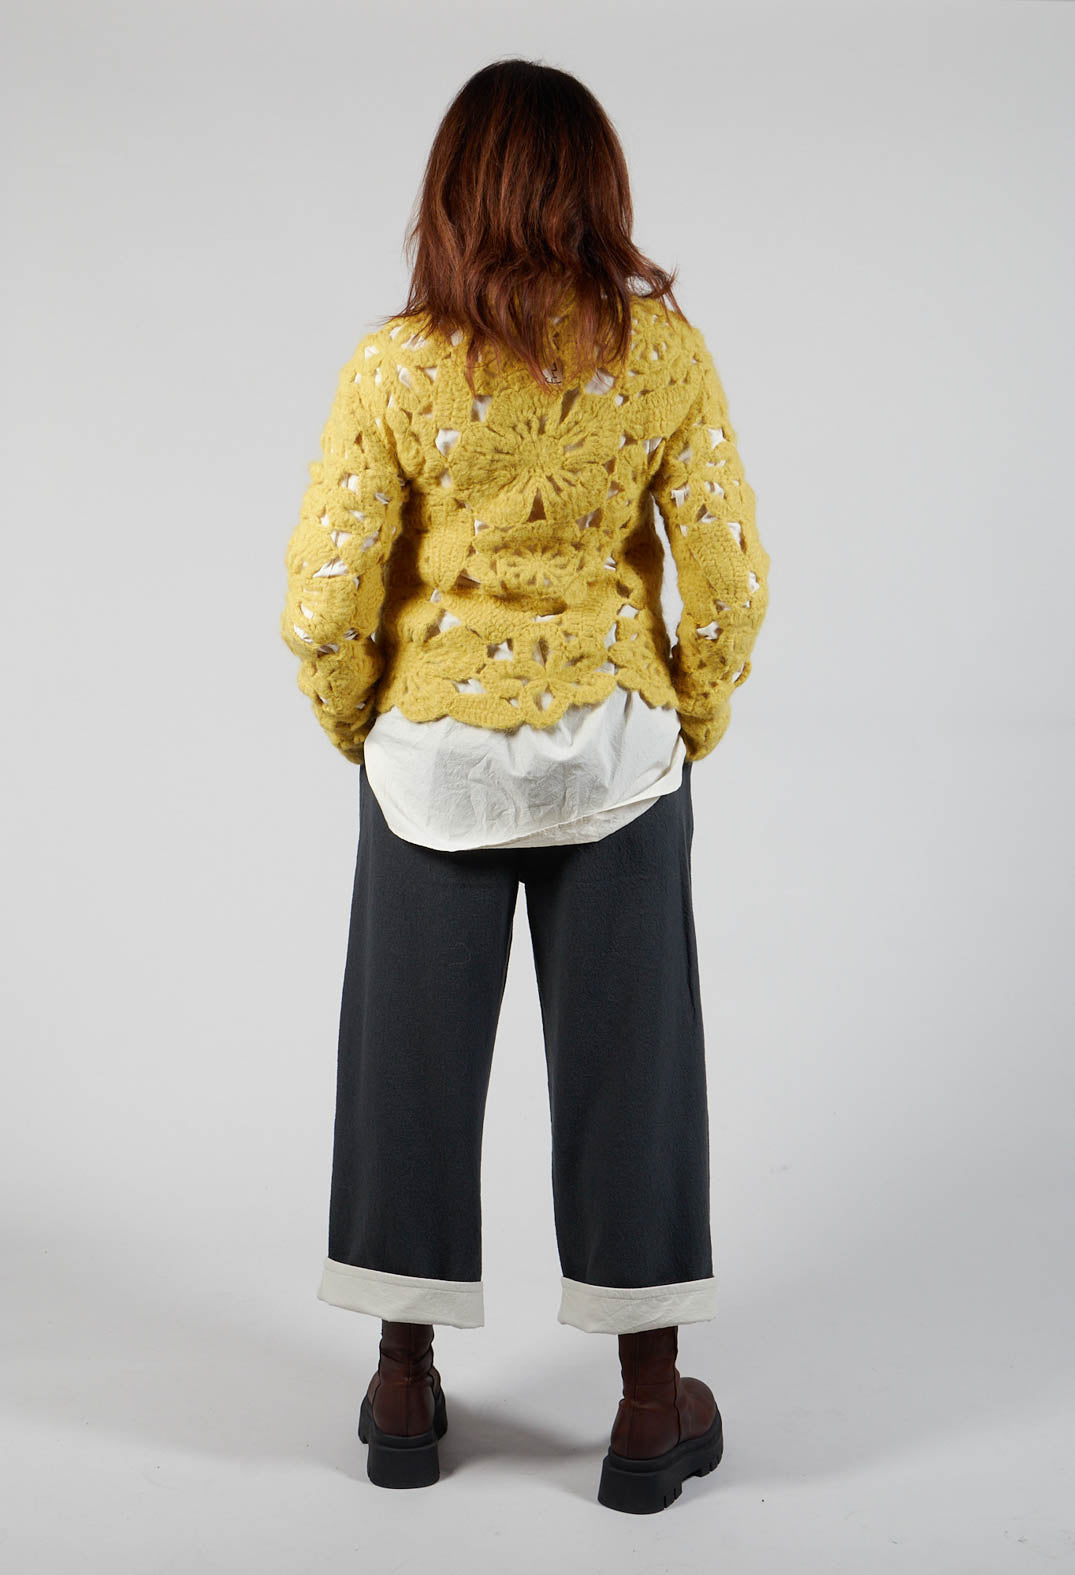 Amber Hand Crochet Sweater in Yellow